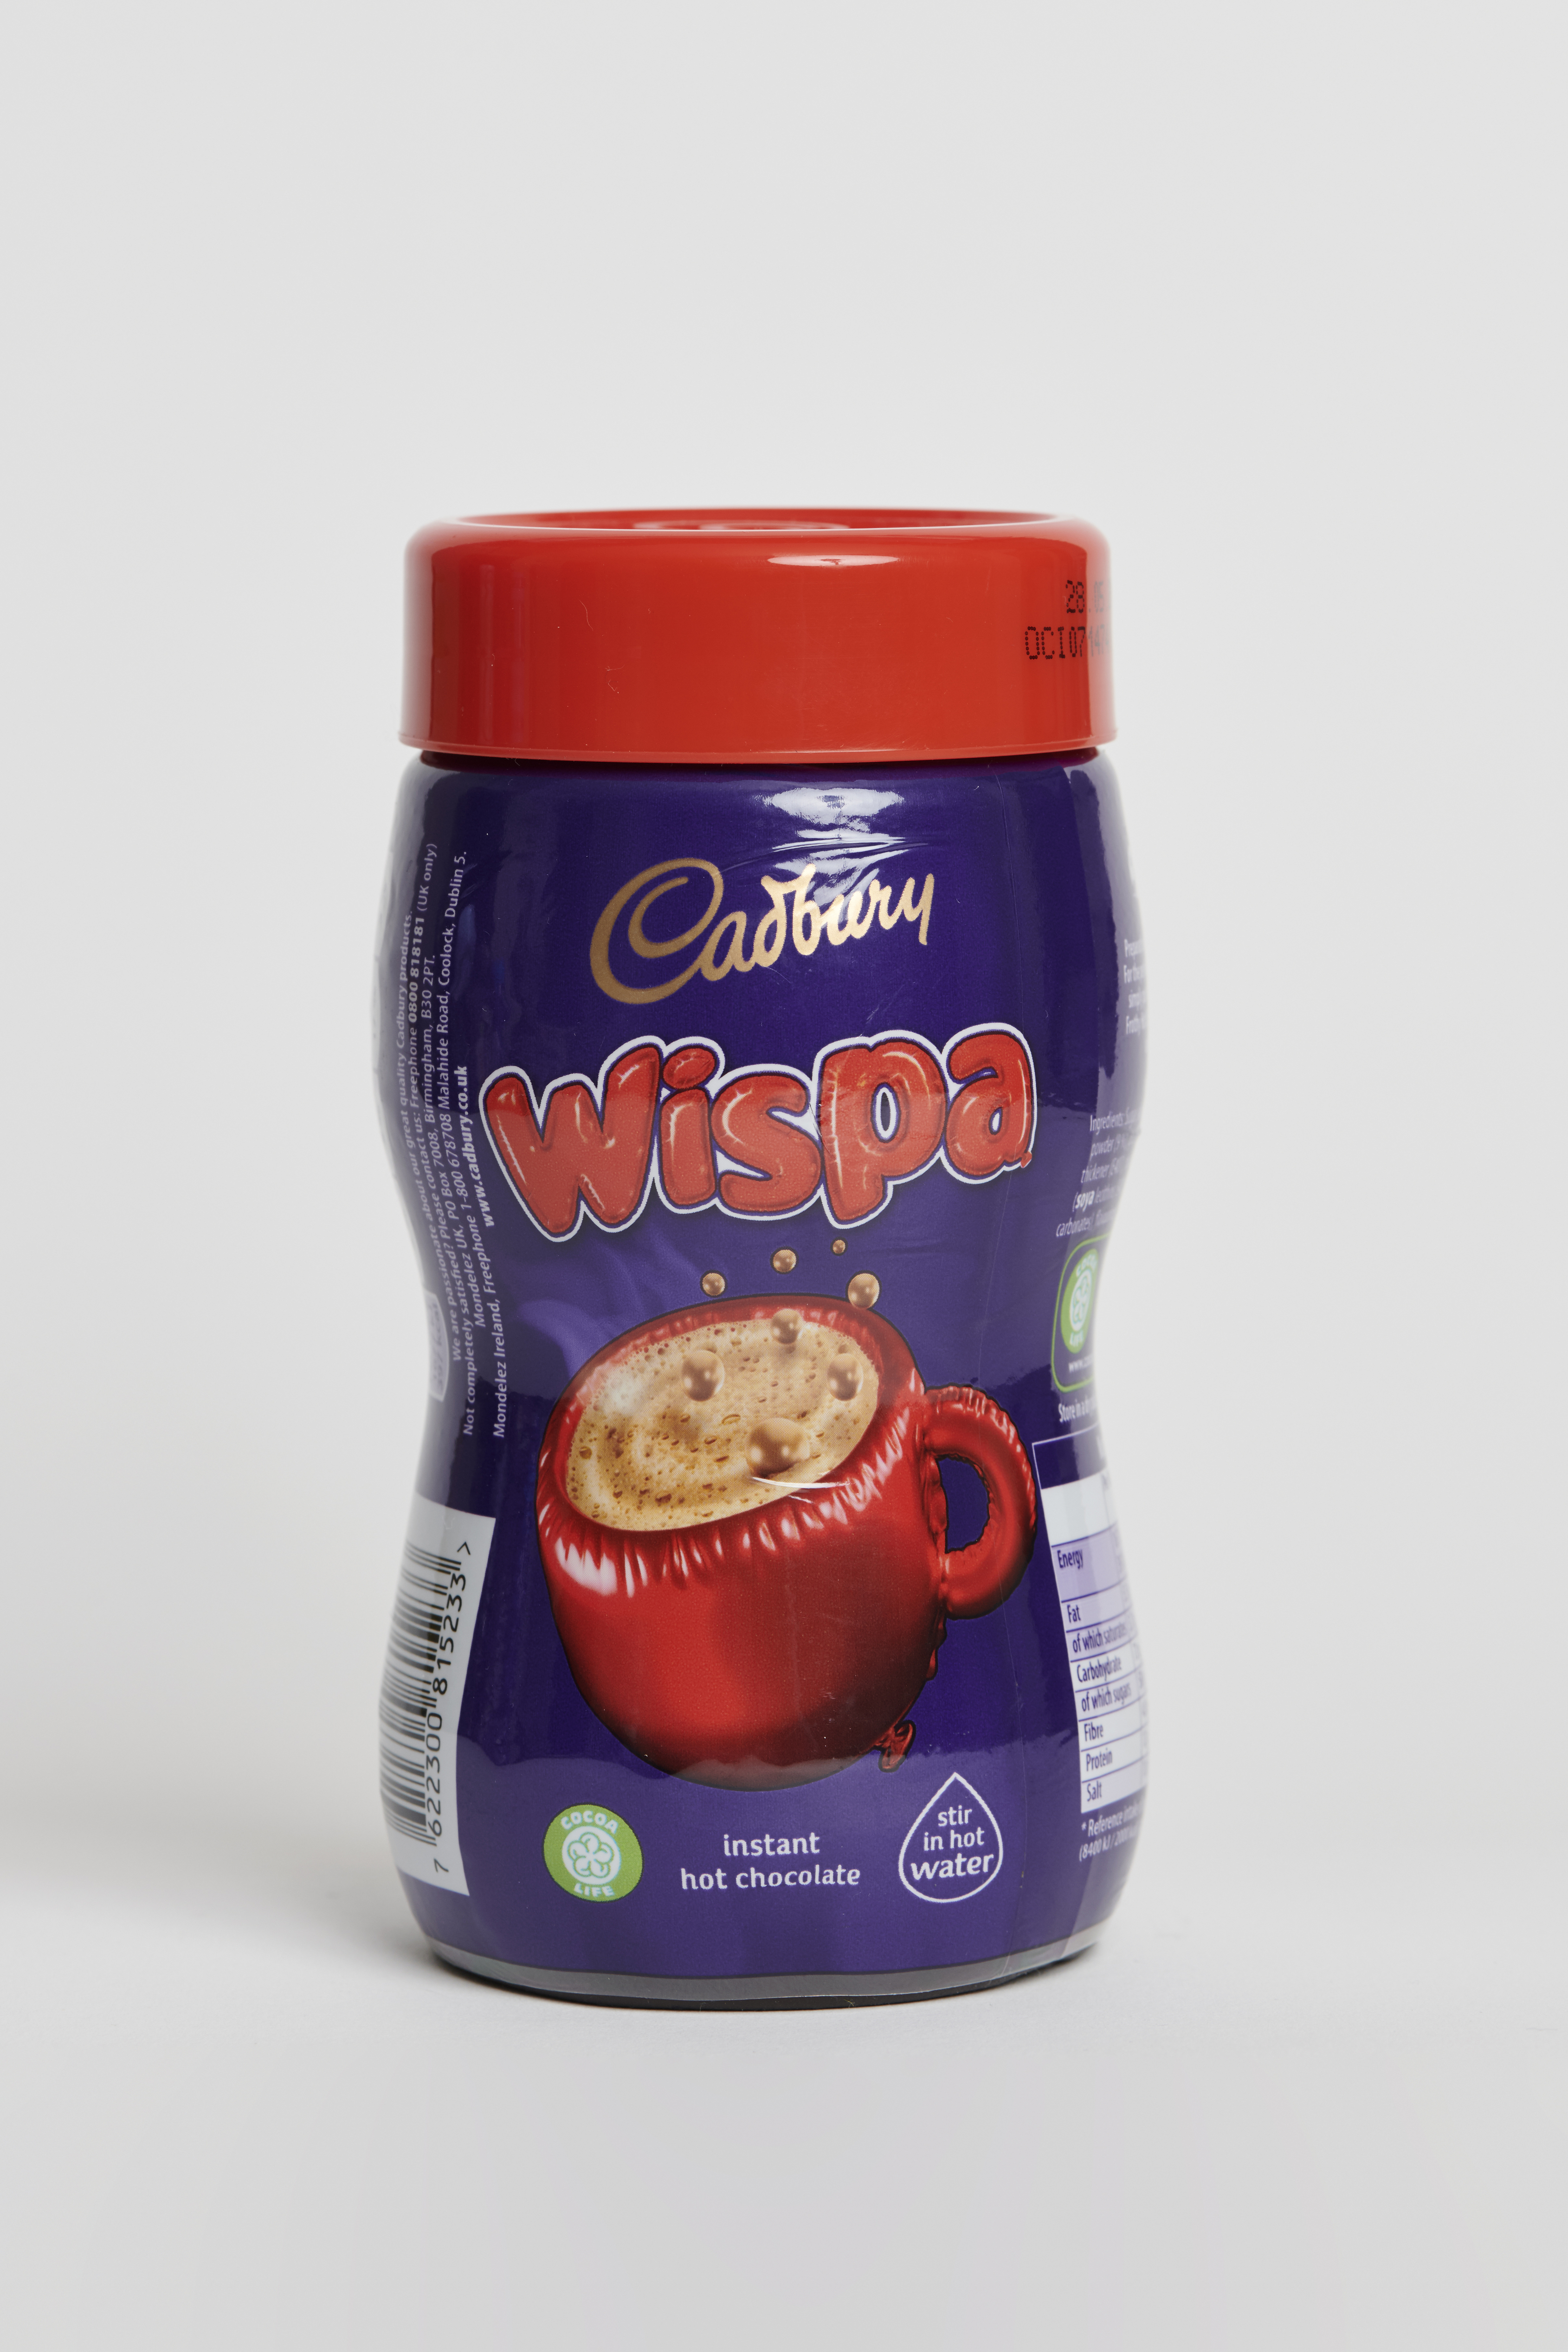 Briten sagten, das Wispa-Produkt sei „die einzige Instant-Heißschokolade, die wir trinken“